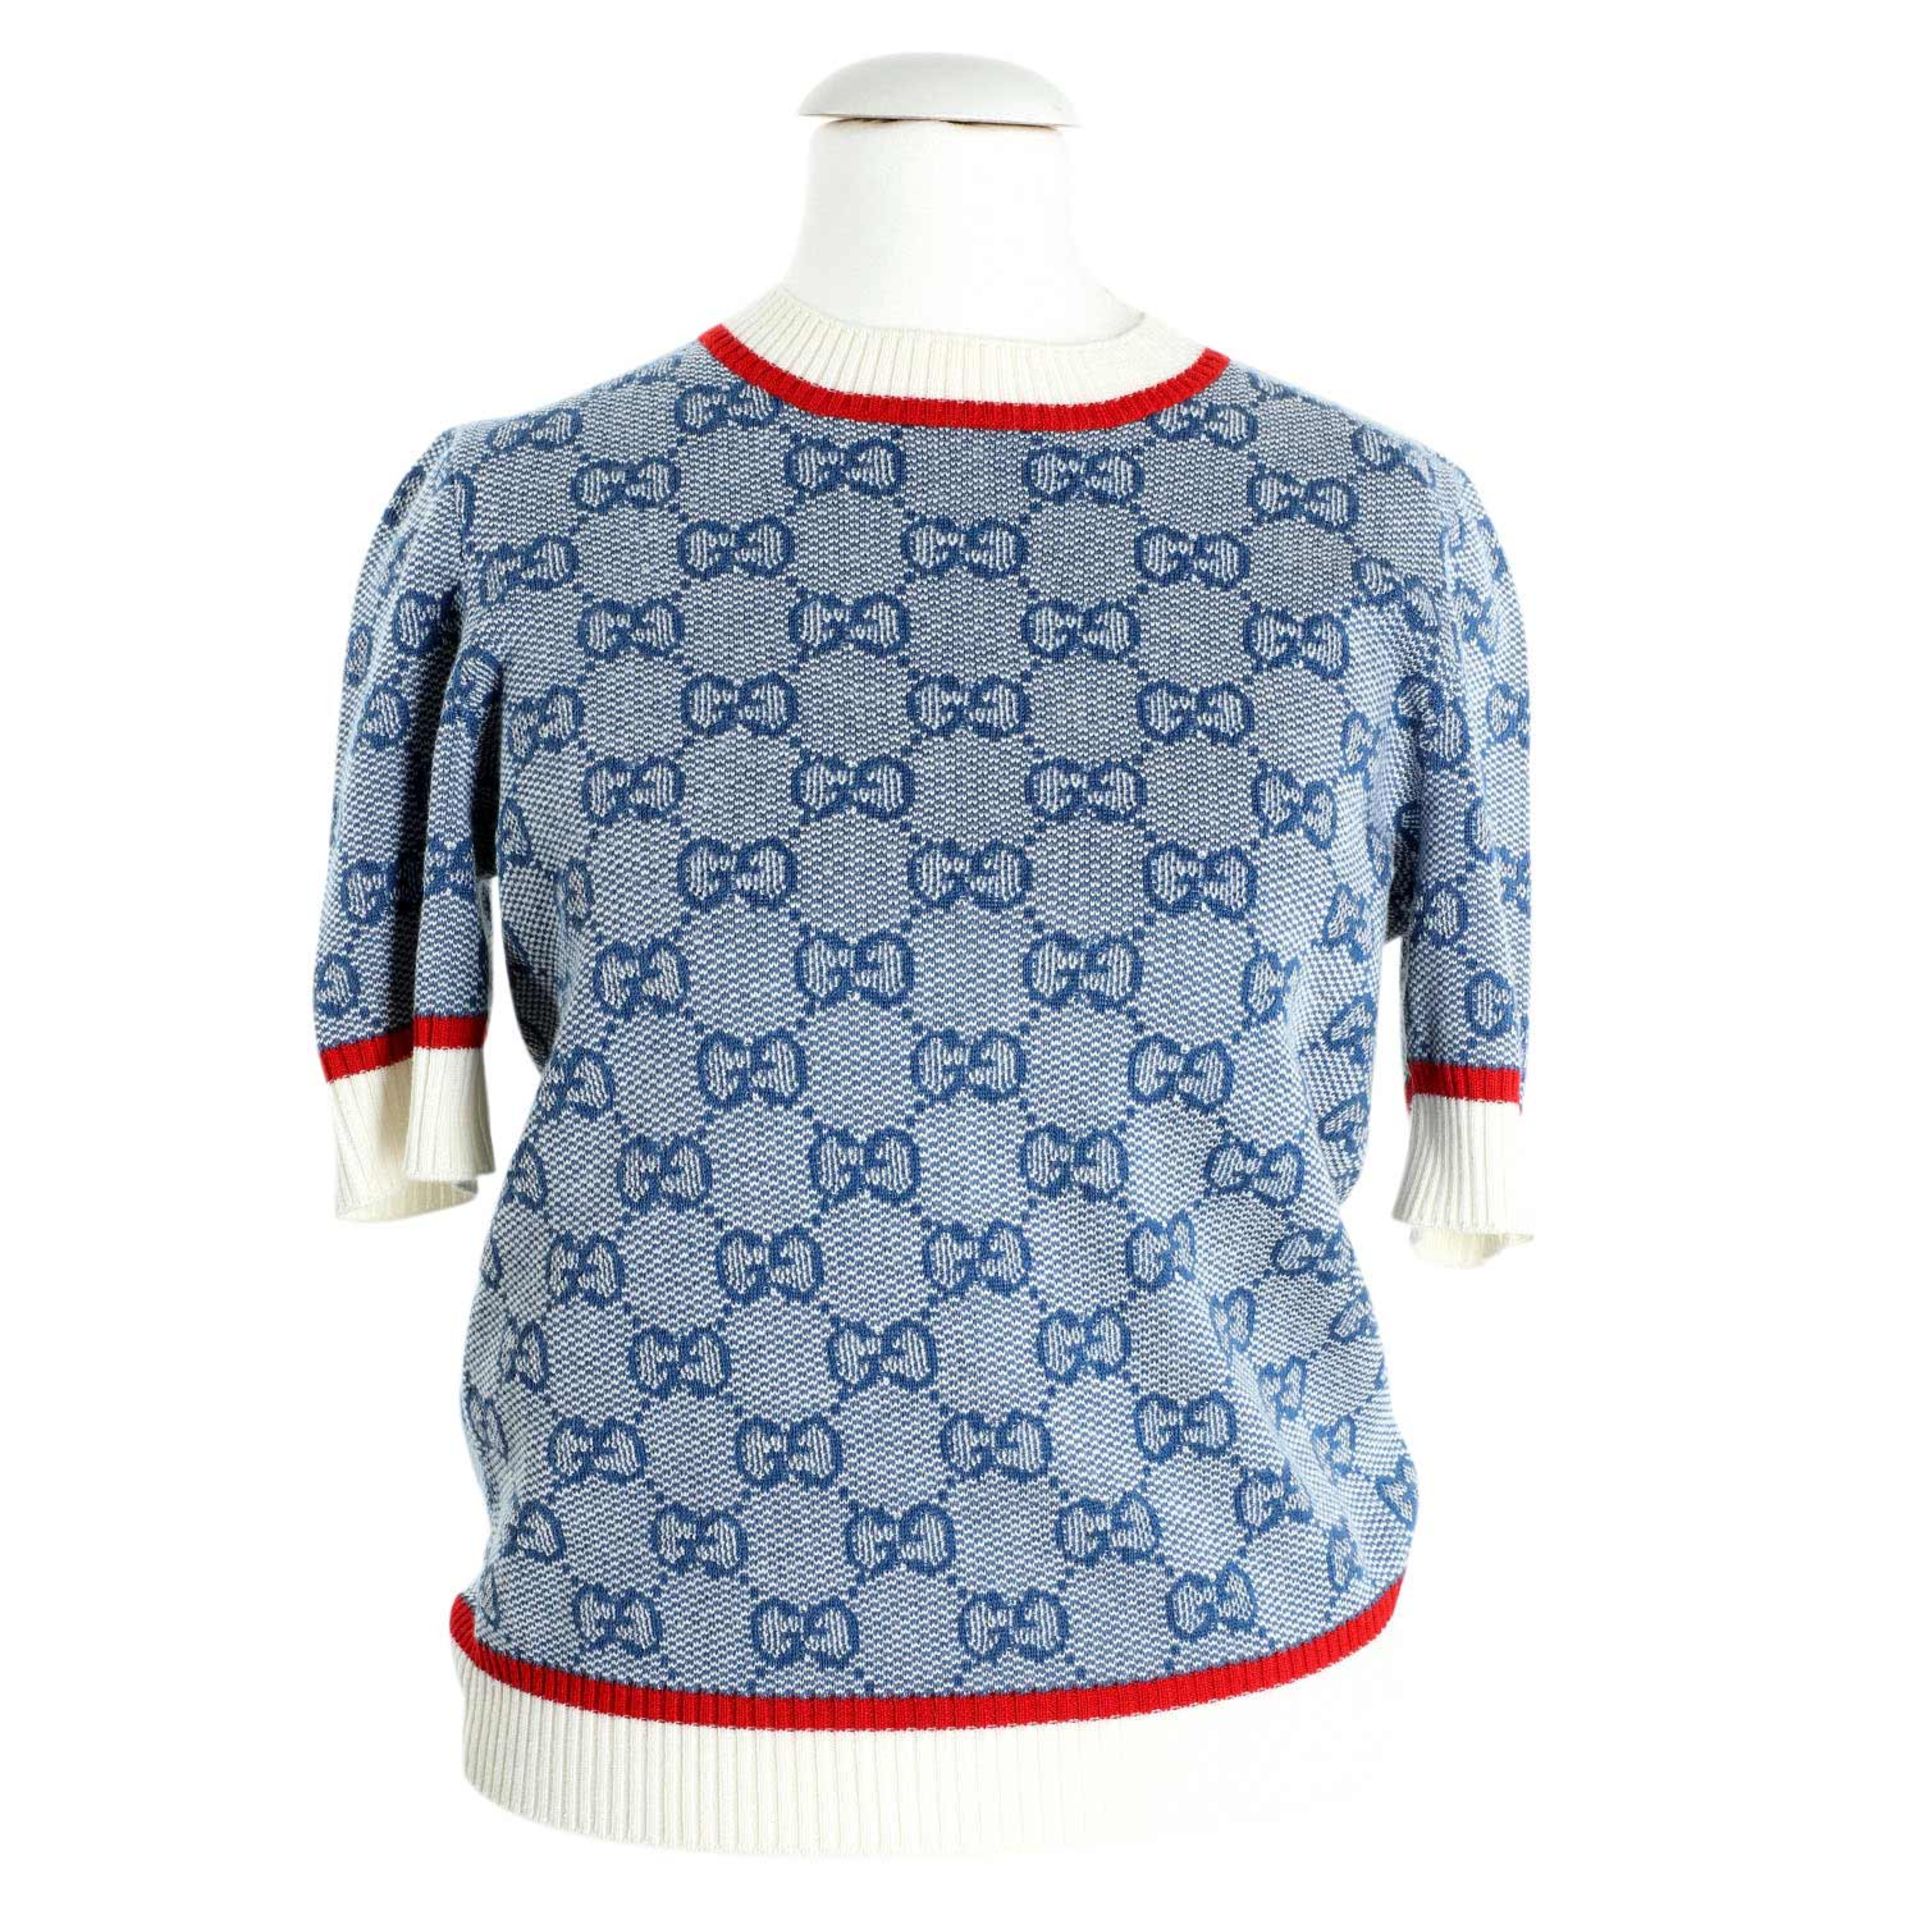 GUCCI Pullover, Gr. S.NP.ca.: 650,-€. Eingewebtes GG-Supreme auf blau-/weißem Textil mit Bündchen.